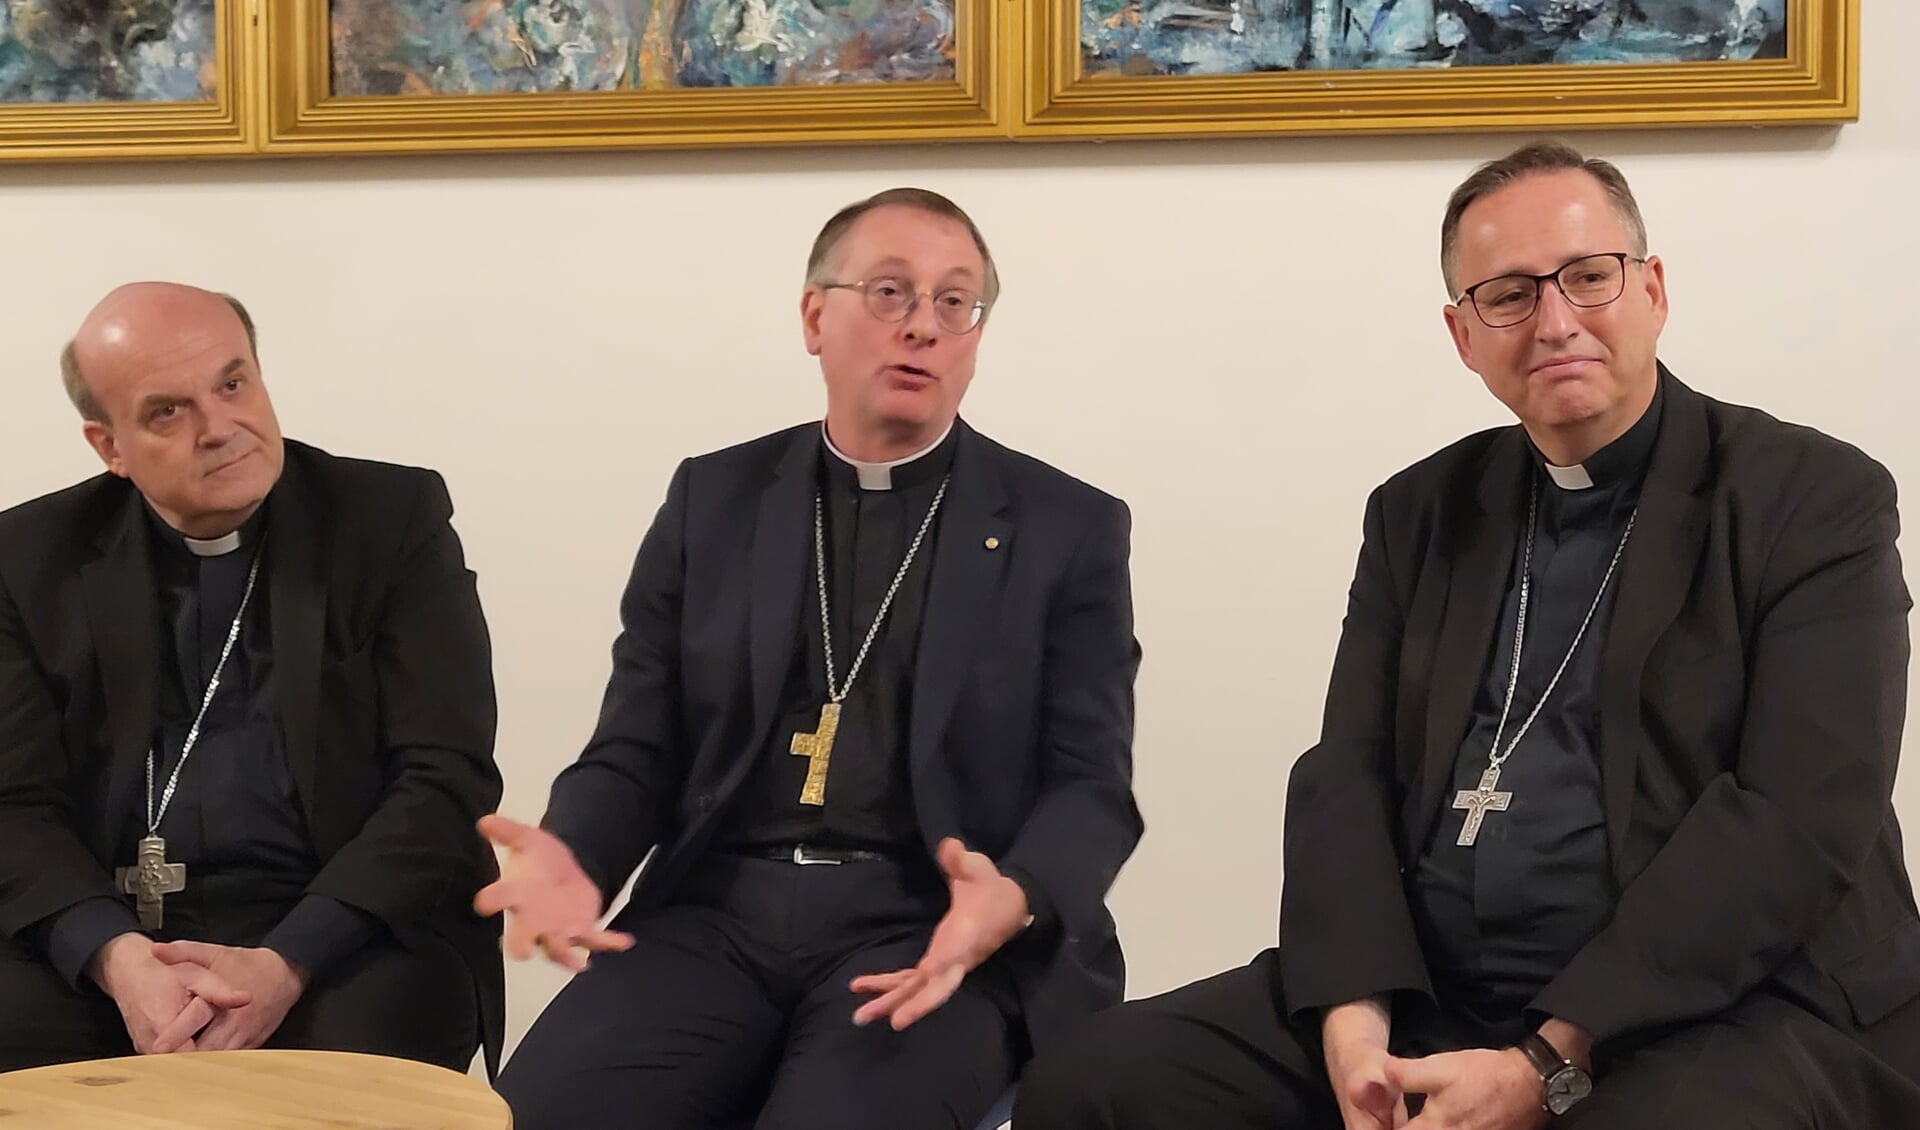 De bisschoppen Hans van den Hende (links), Ron van den Hout (midden) en Herman Woorts (rechts) tijdens de persconferentie maandagavond in de Friezenkerk vlak bij het Vaticaan.